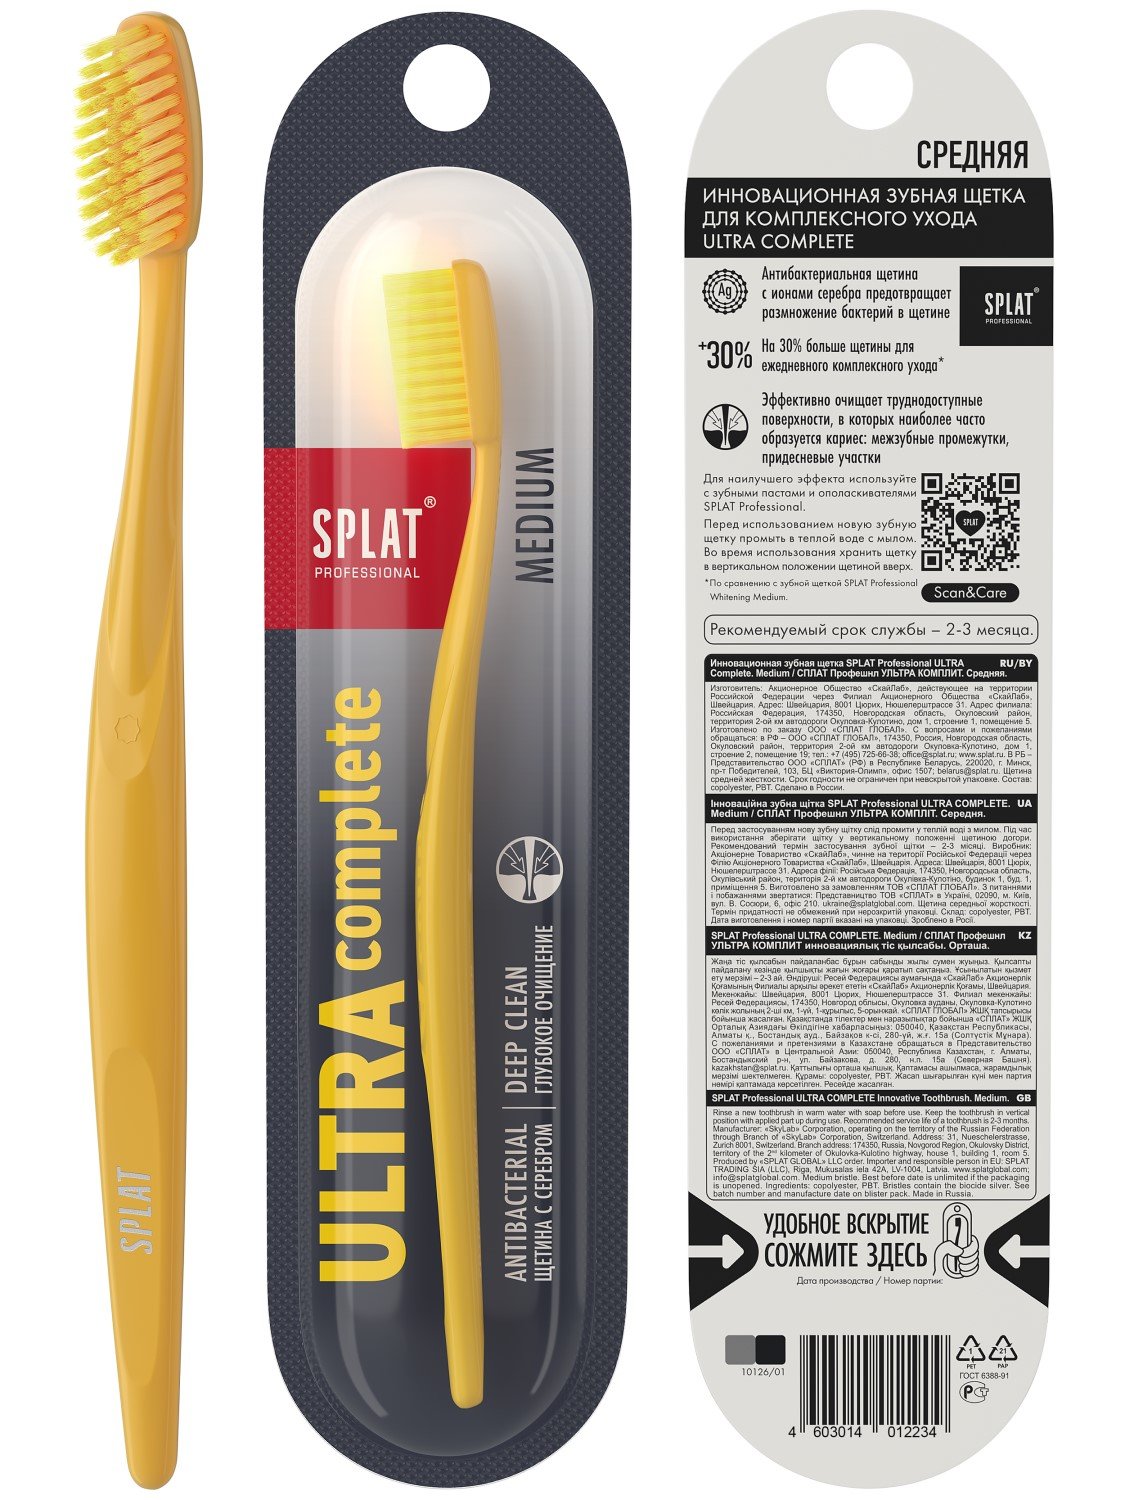 Зубная щетка Splat Professional Ultra Complete, средняя, желтый - фото 2